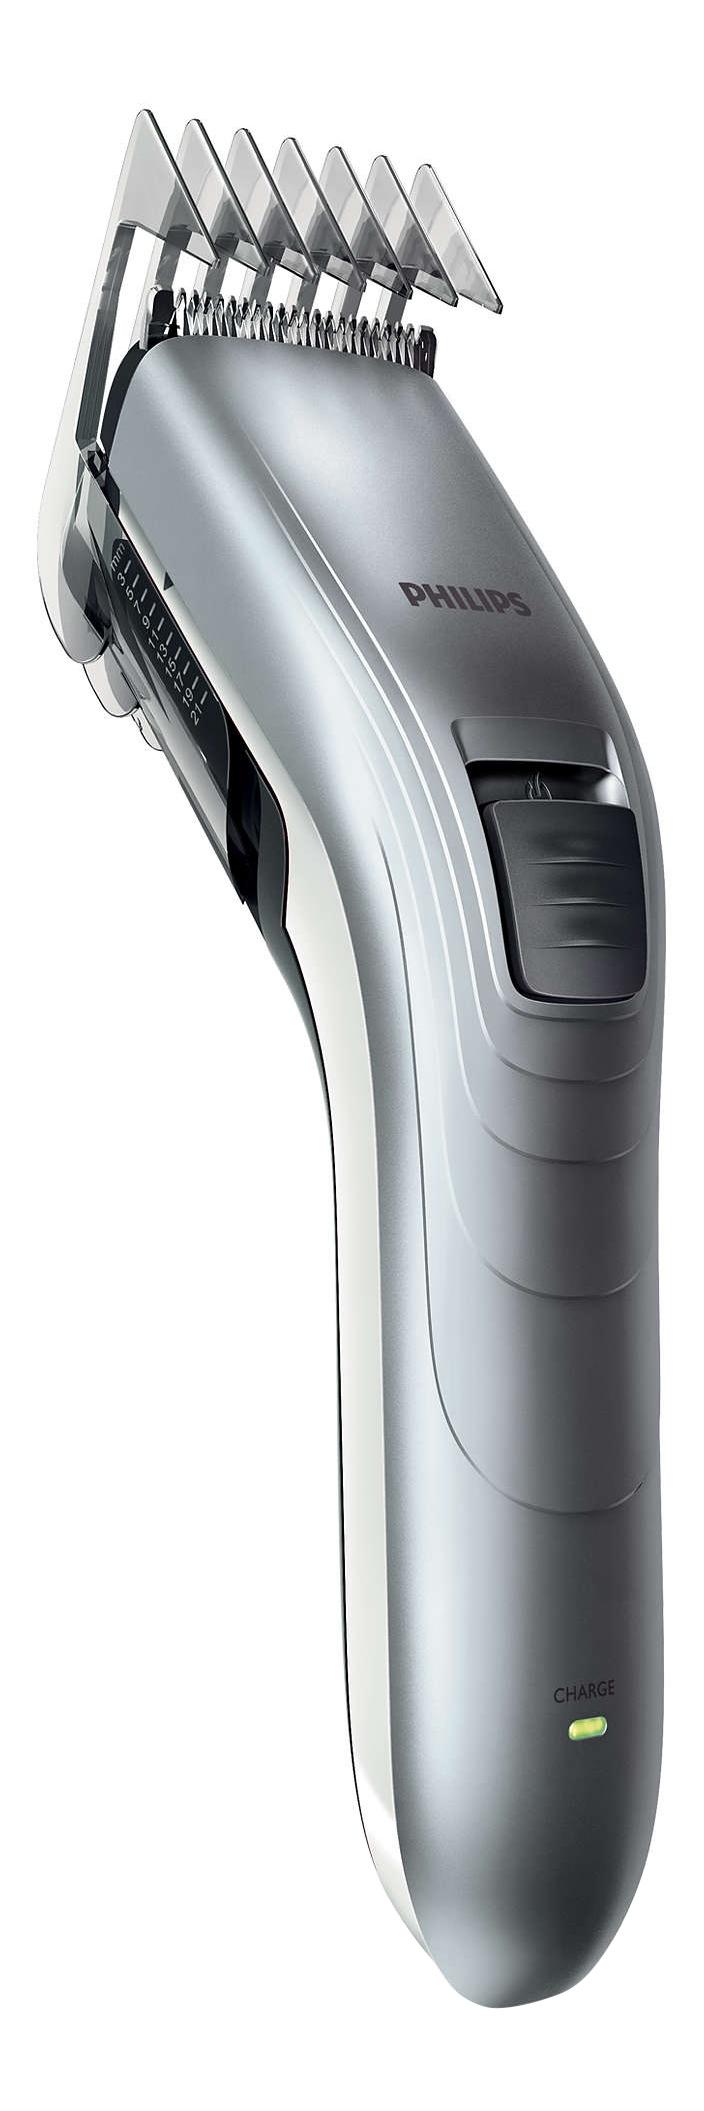 Машинка для стрижки волос Philips Series 3000 QC5130/ 15 машинка для стрижки волос philips mg7720 15